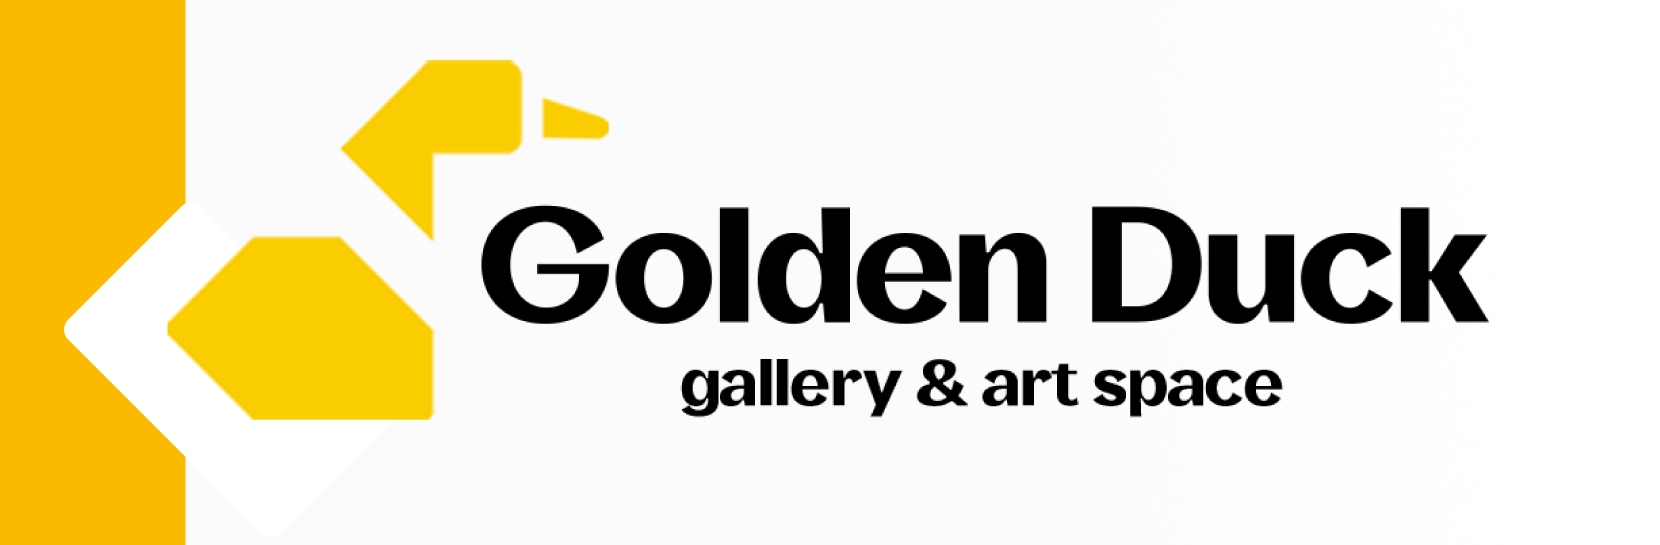 Golden Duck Gallery & Art Space